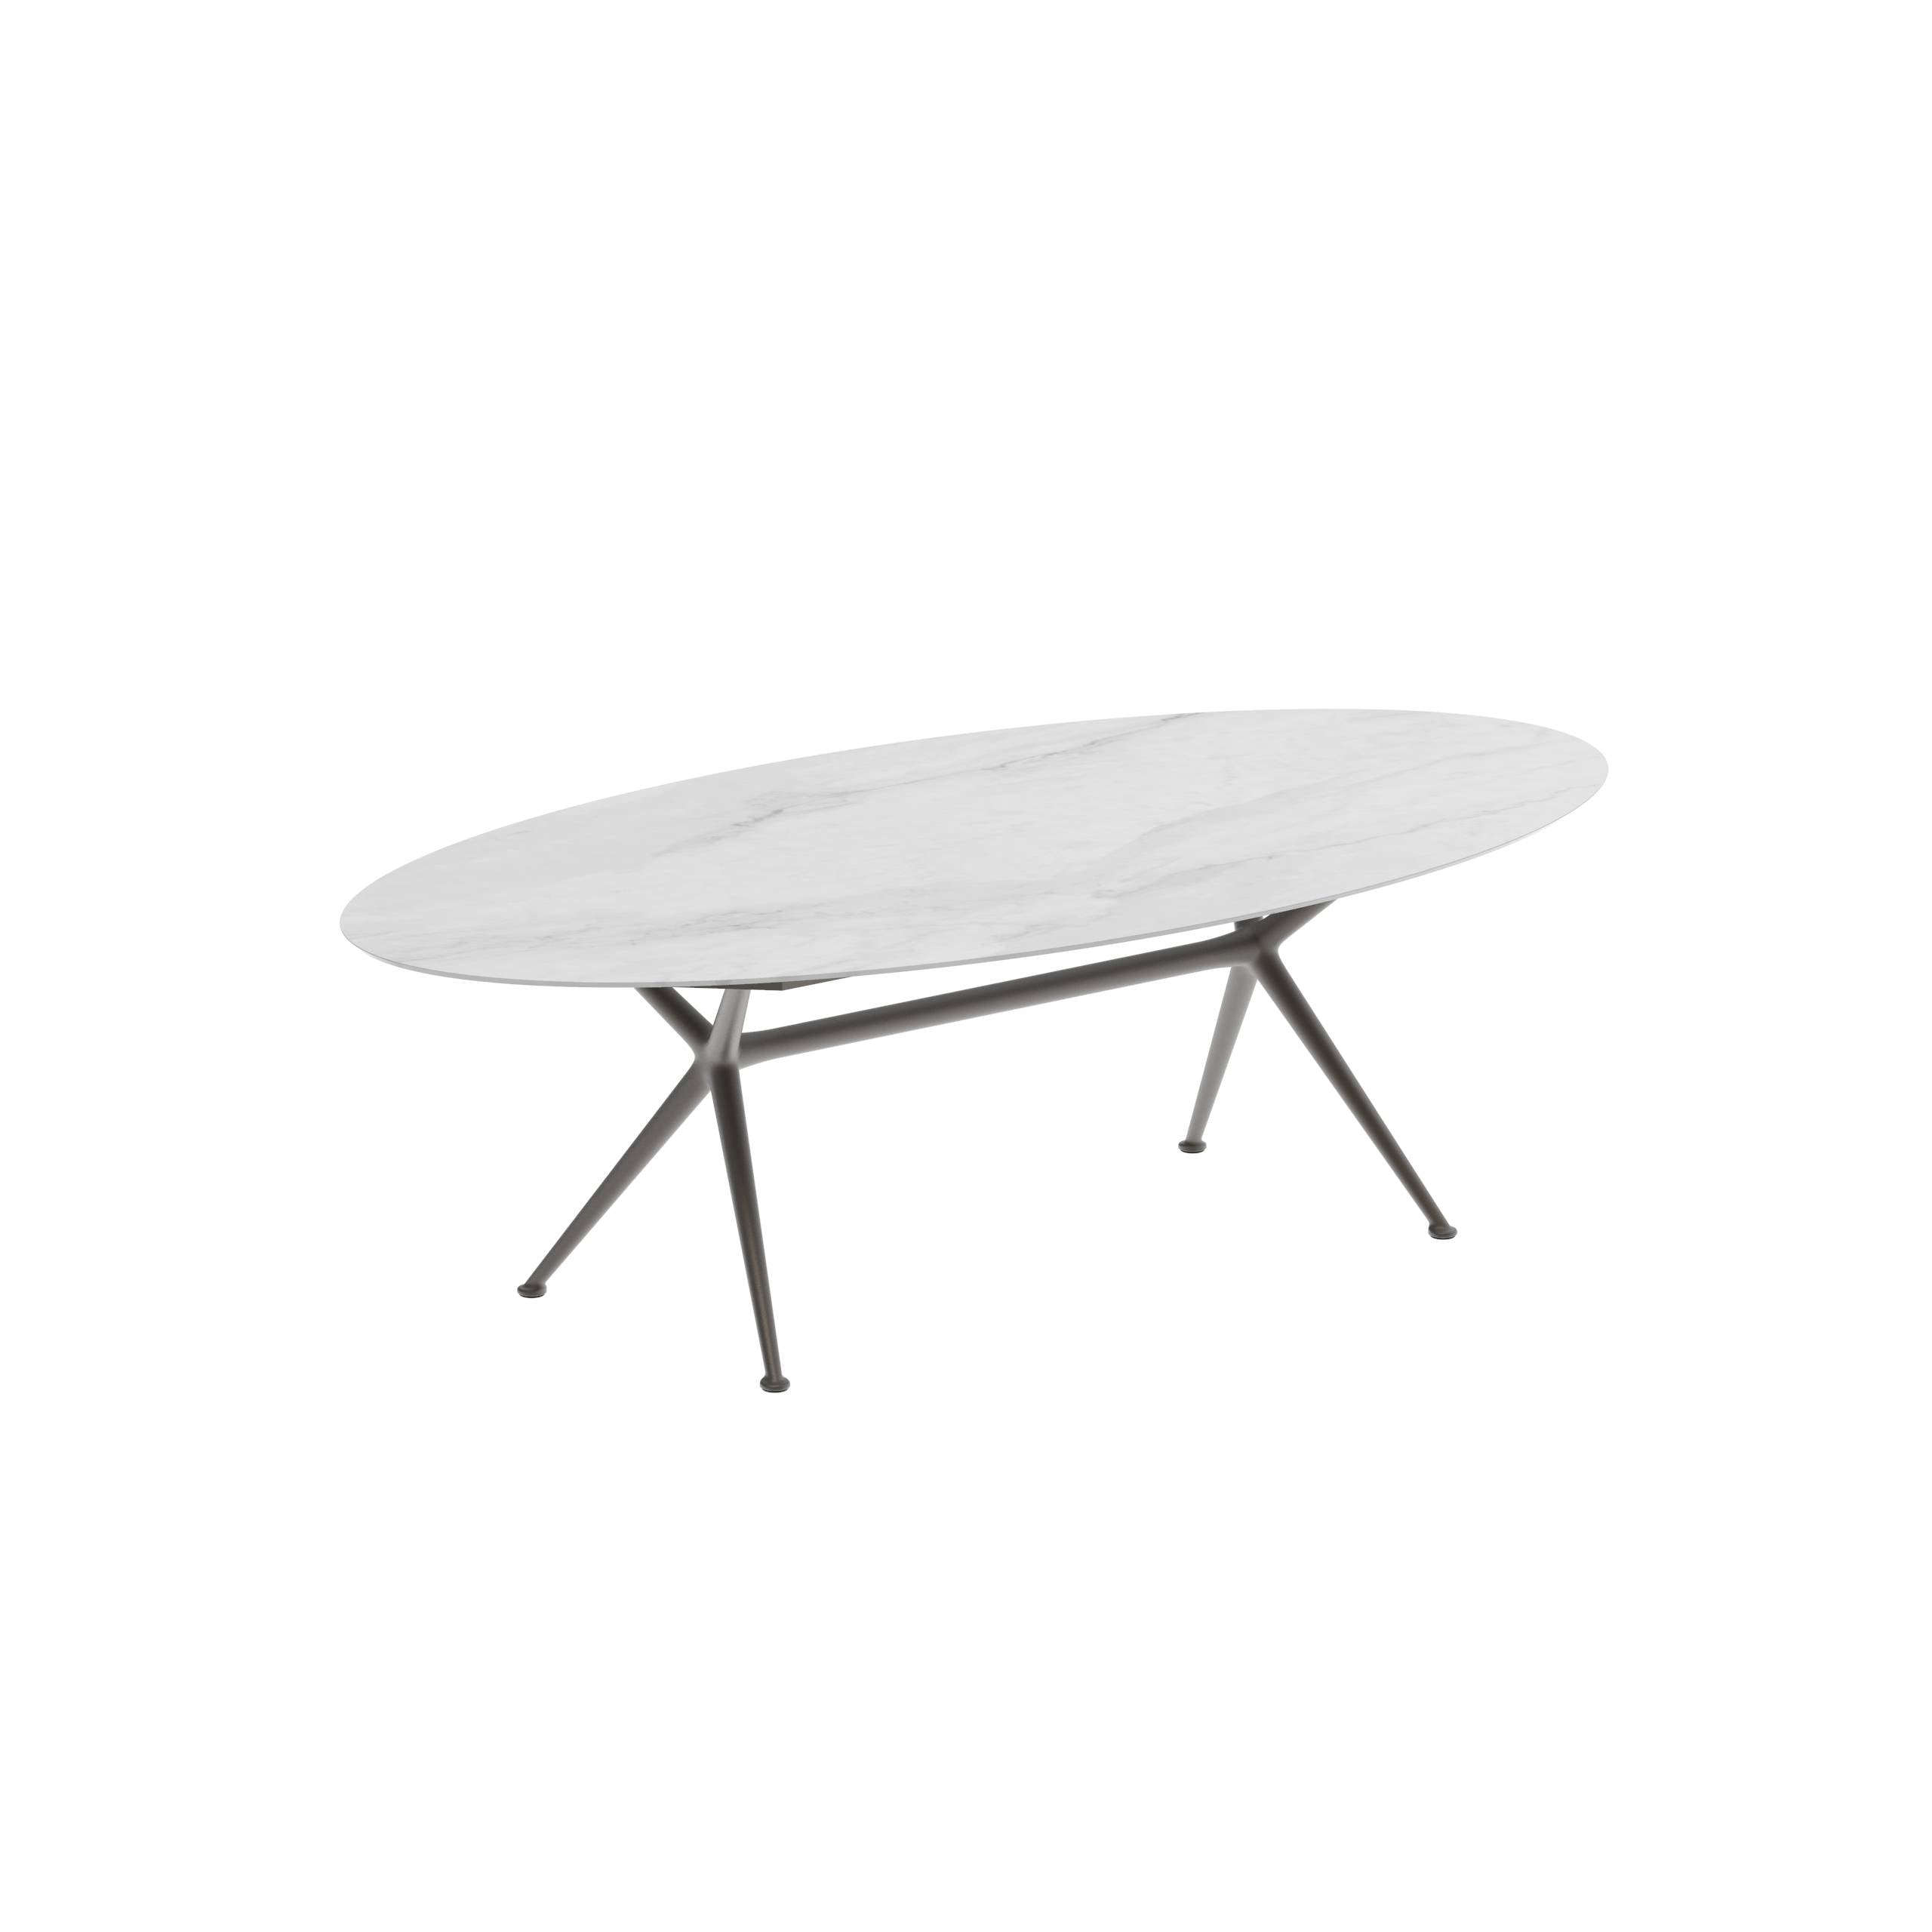 Exes Table Ellipse 250x130cm Alu Legs Bronze - Table Top Ceramic Bianco Statuario